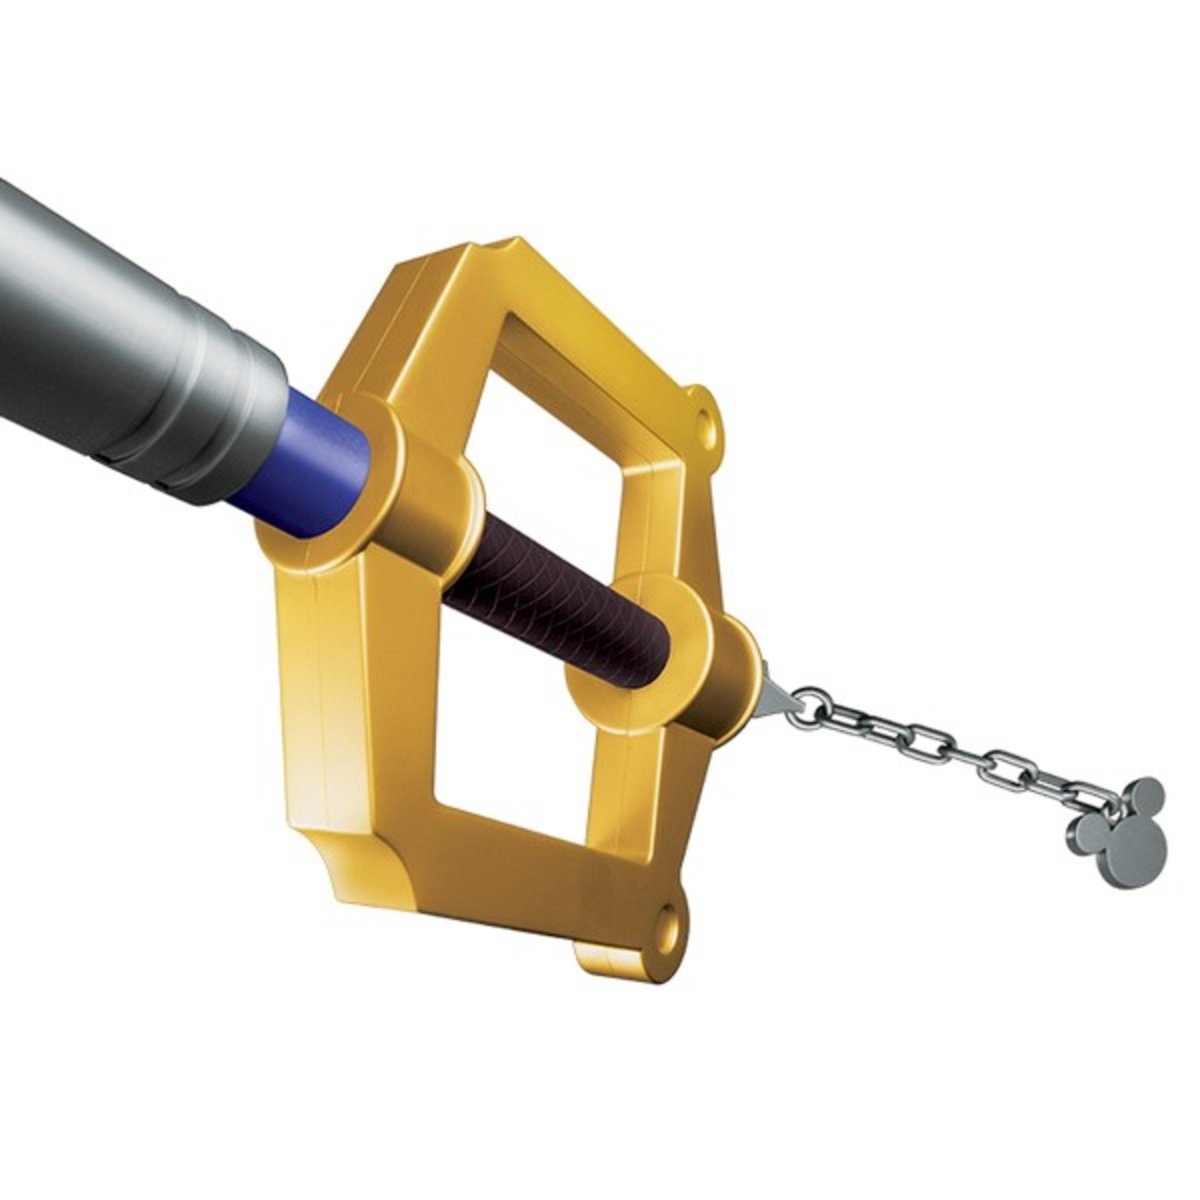 La llave espada a escala real de Kingdom Hearts que todo fan desea tener